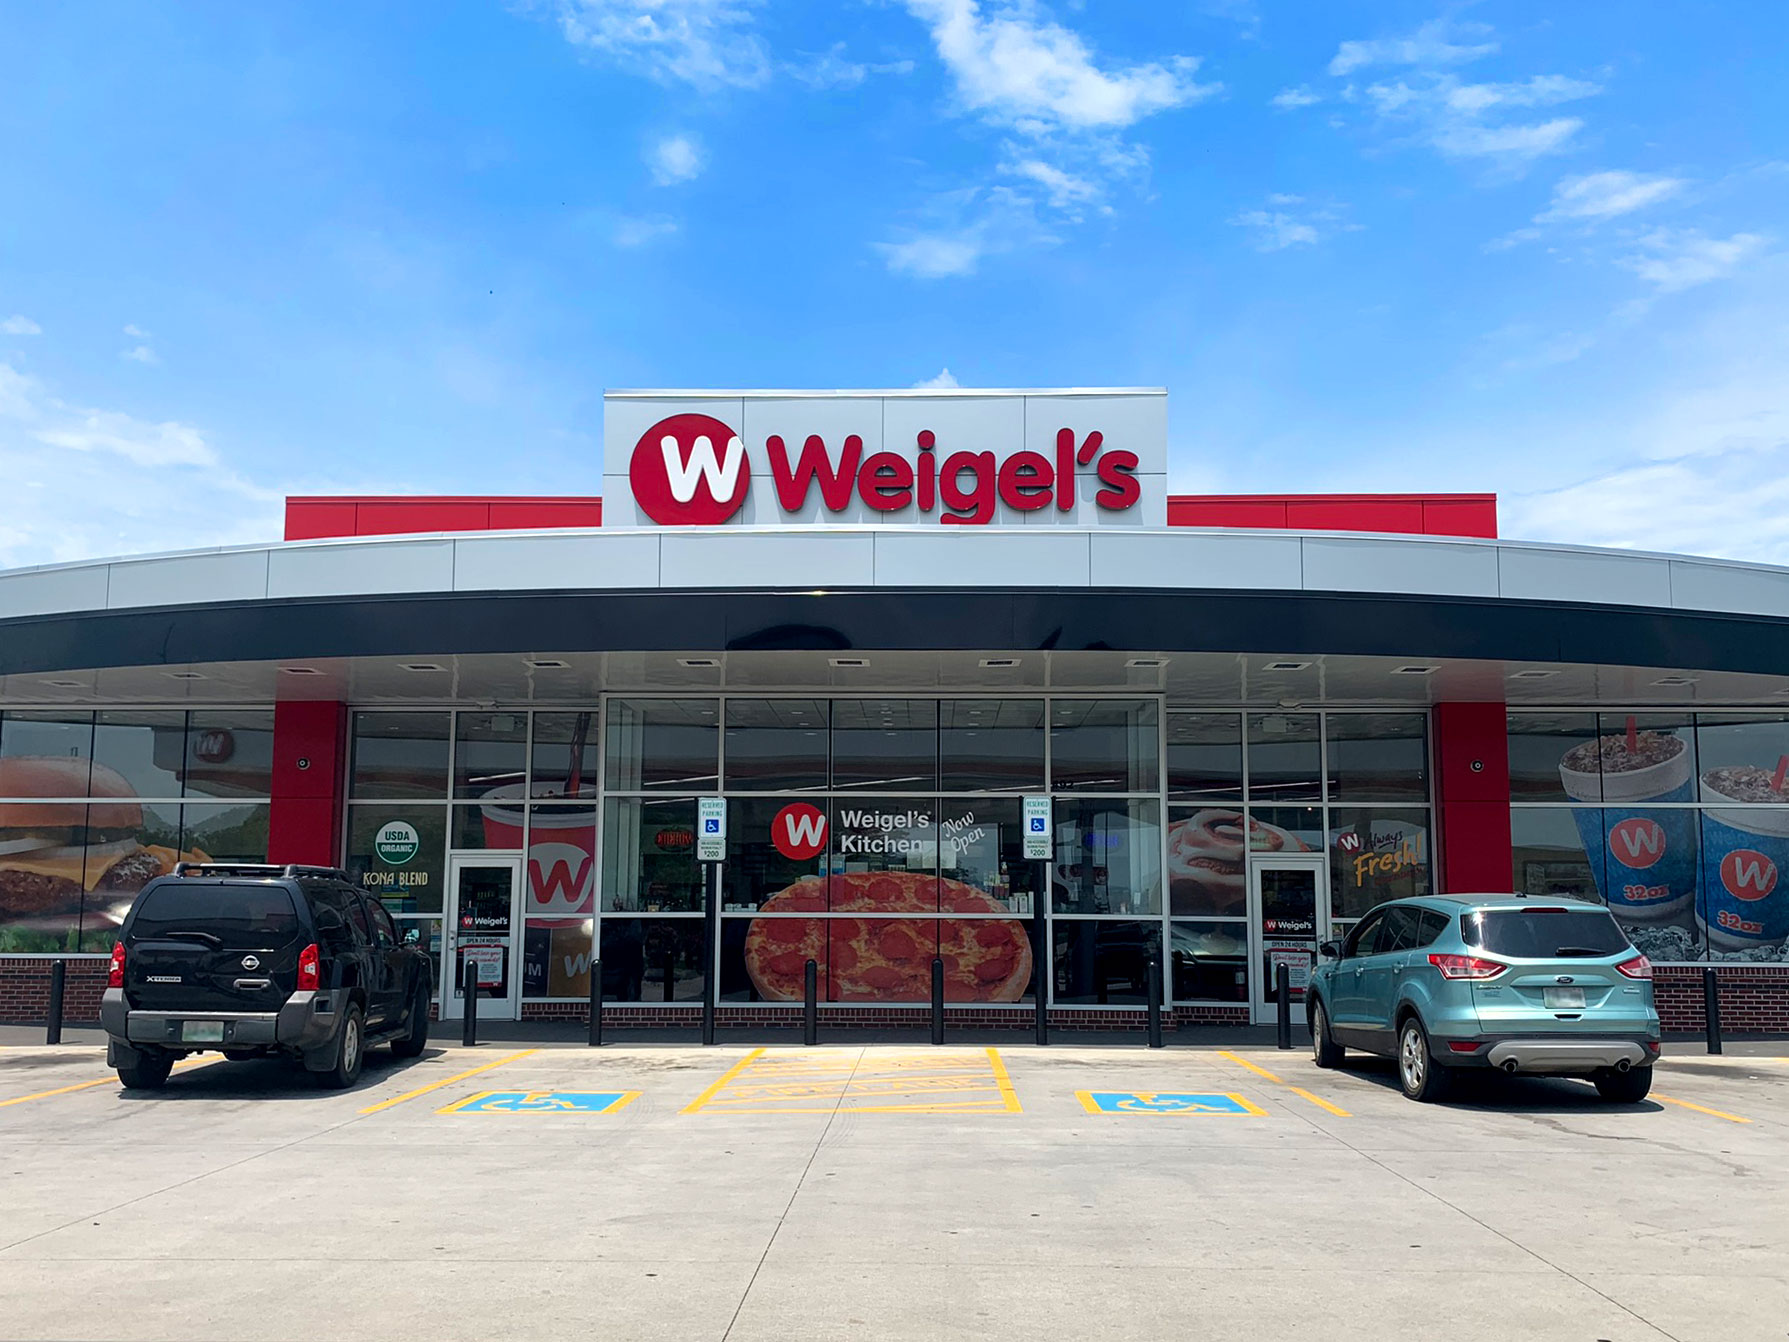 Weigel's storefront